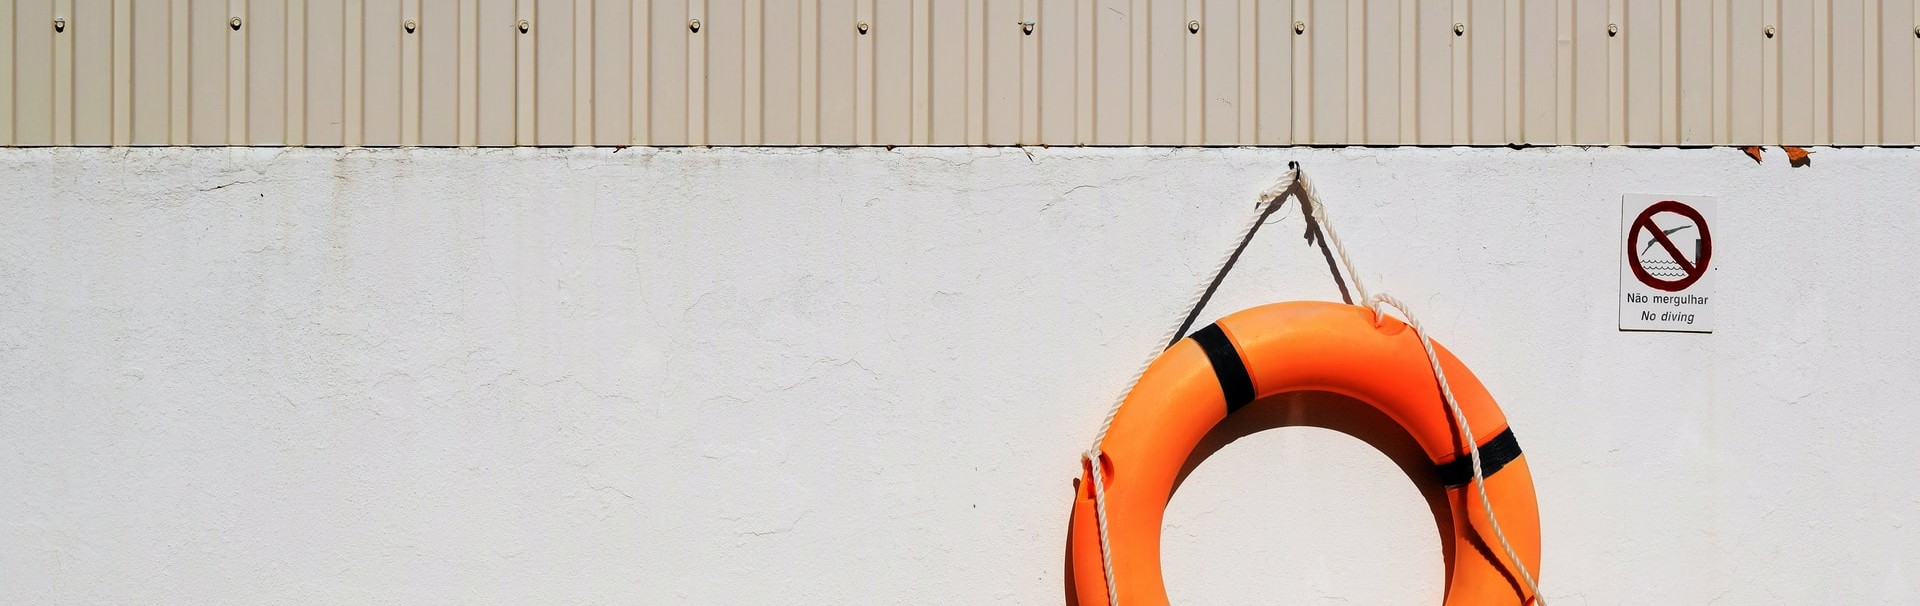 Ein orangefarbener Rettungsring hängt an einer hellgrauen Wand. Daneben hängt ein Verbotsschild mit der Aufschrift Nao mergulhar - No diving.